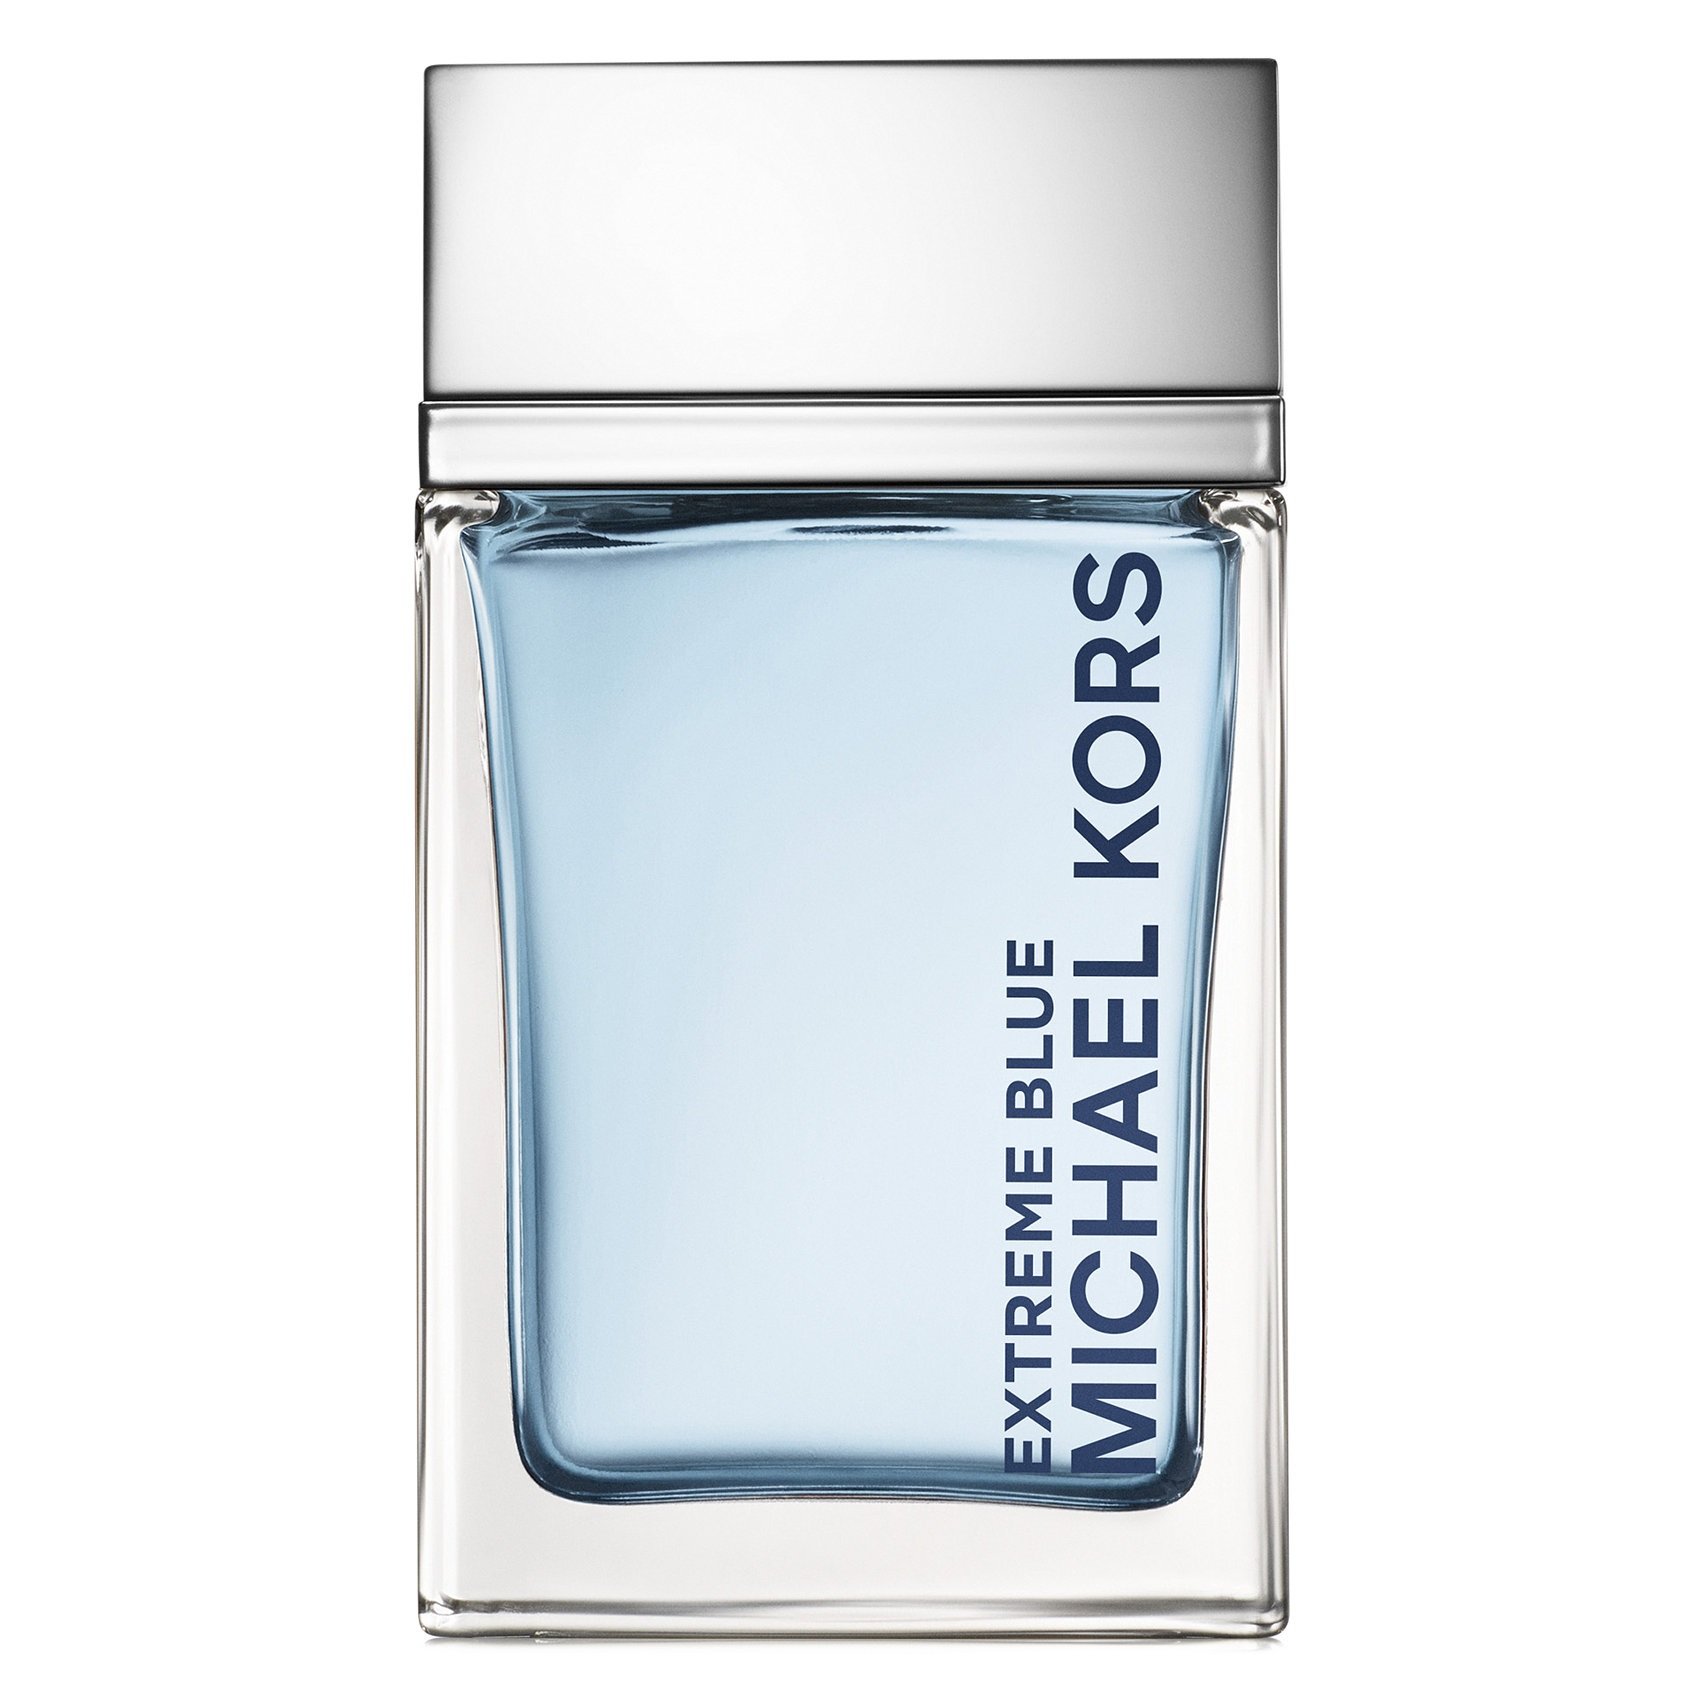 michael kors perfume gift set